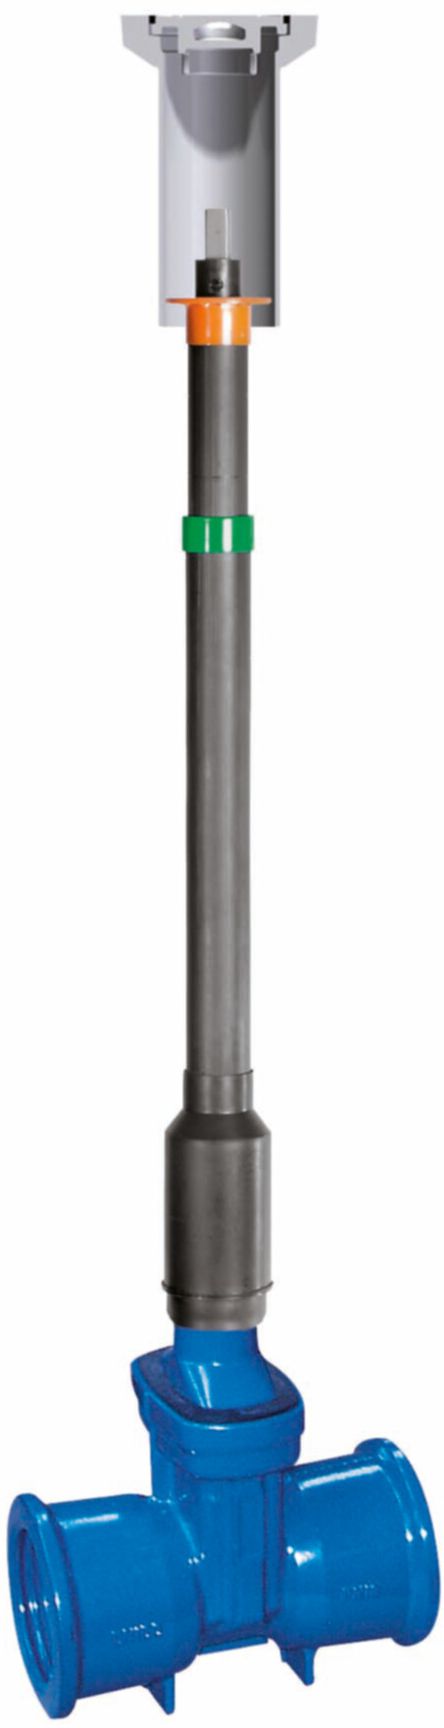 Teleskop-Einbaugarnitur Fig. 6895 L1 DN 80 GT 1.01 - 1.26 m - Von Roll Armaturen